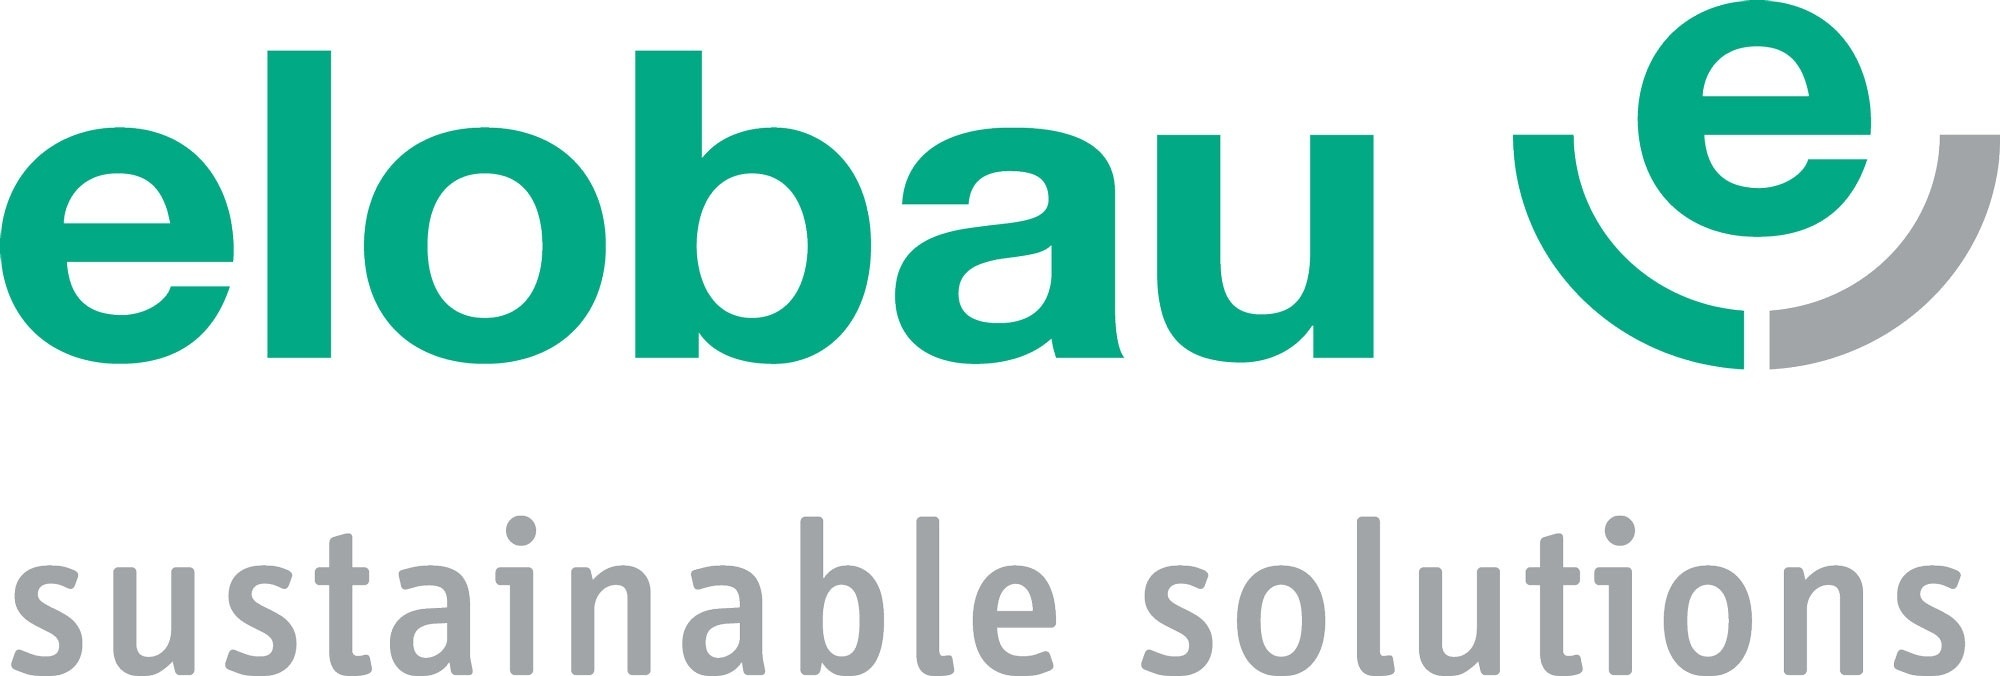 Logo ensian Group GmbH |  elobau GmbH & Co KG